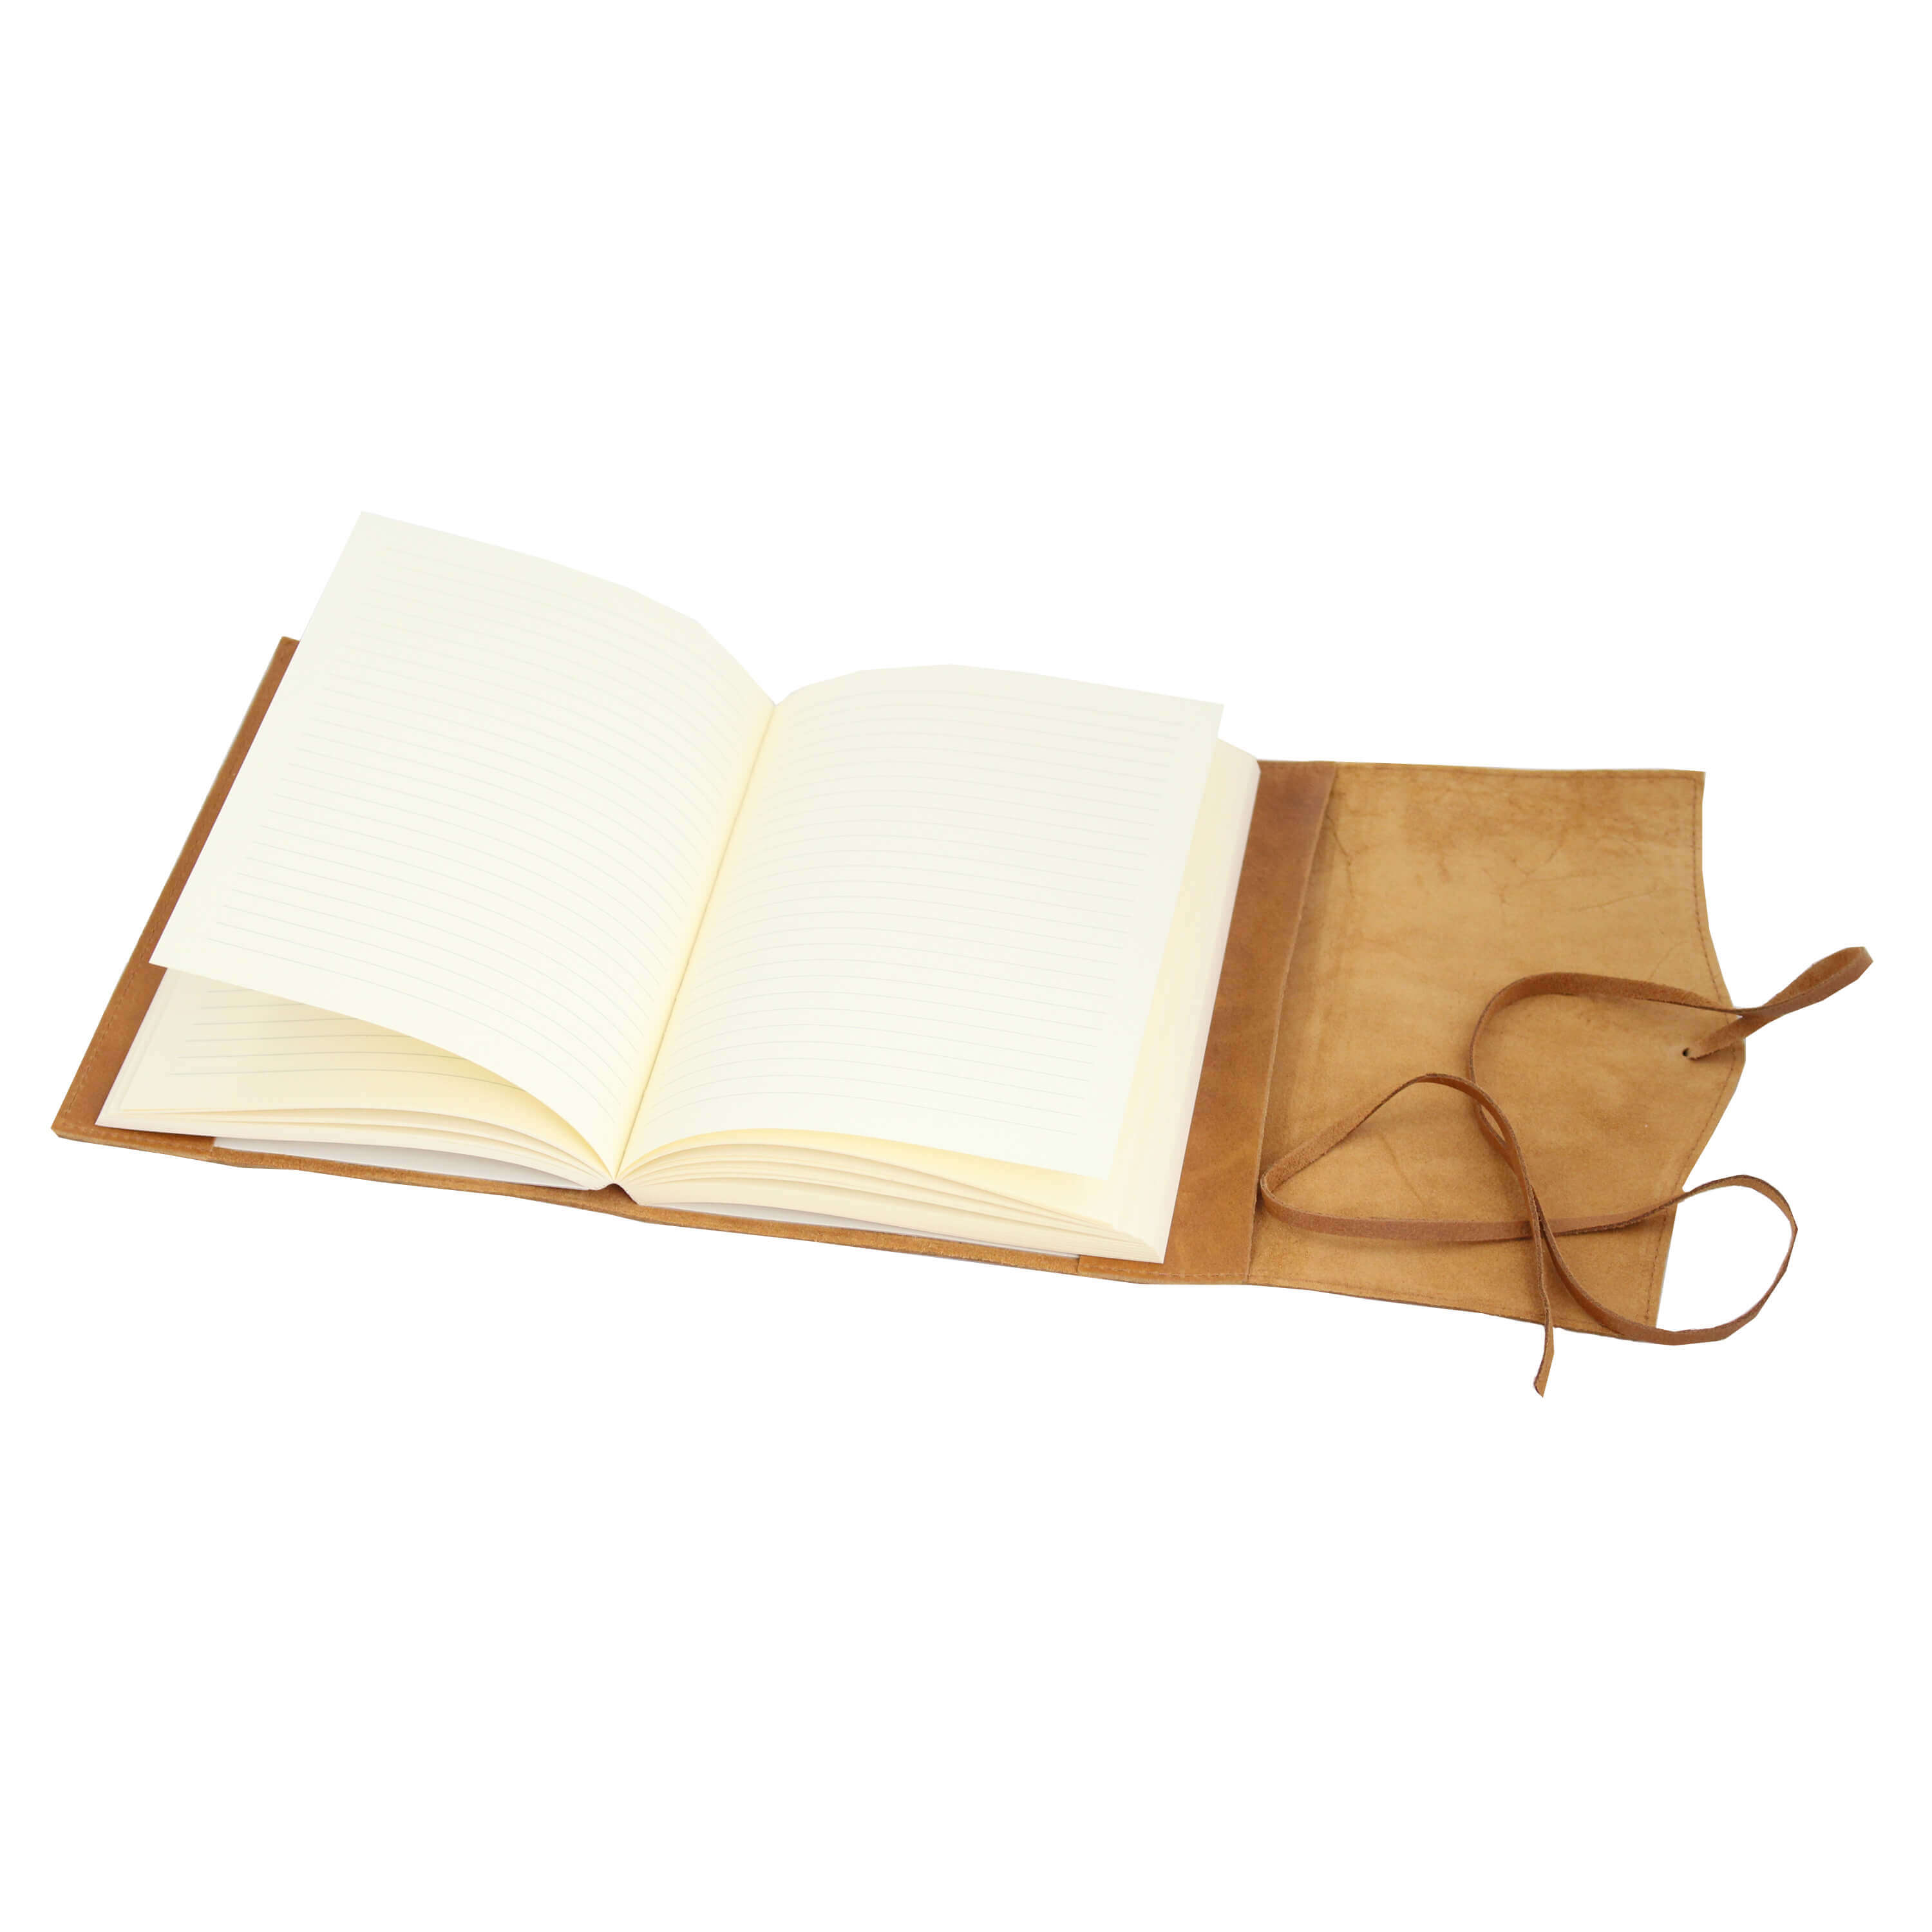 Vermoorden Verantwoordelijk persoon Ontslag nemen Leren notitieboek navulbaar Amalfi blauw kopen | My Lovely Notebook